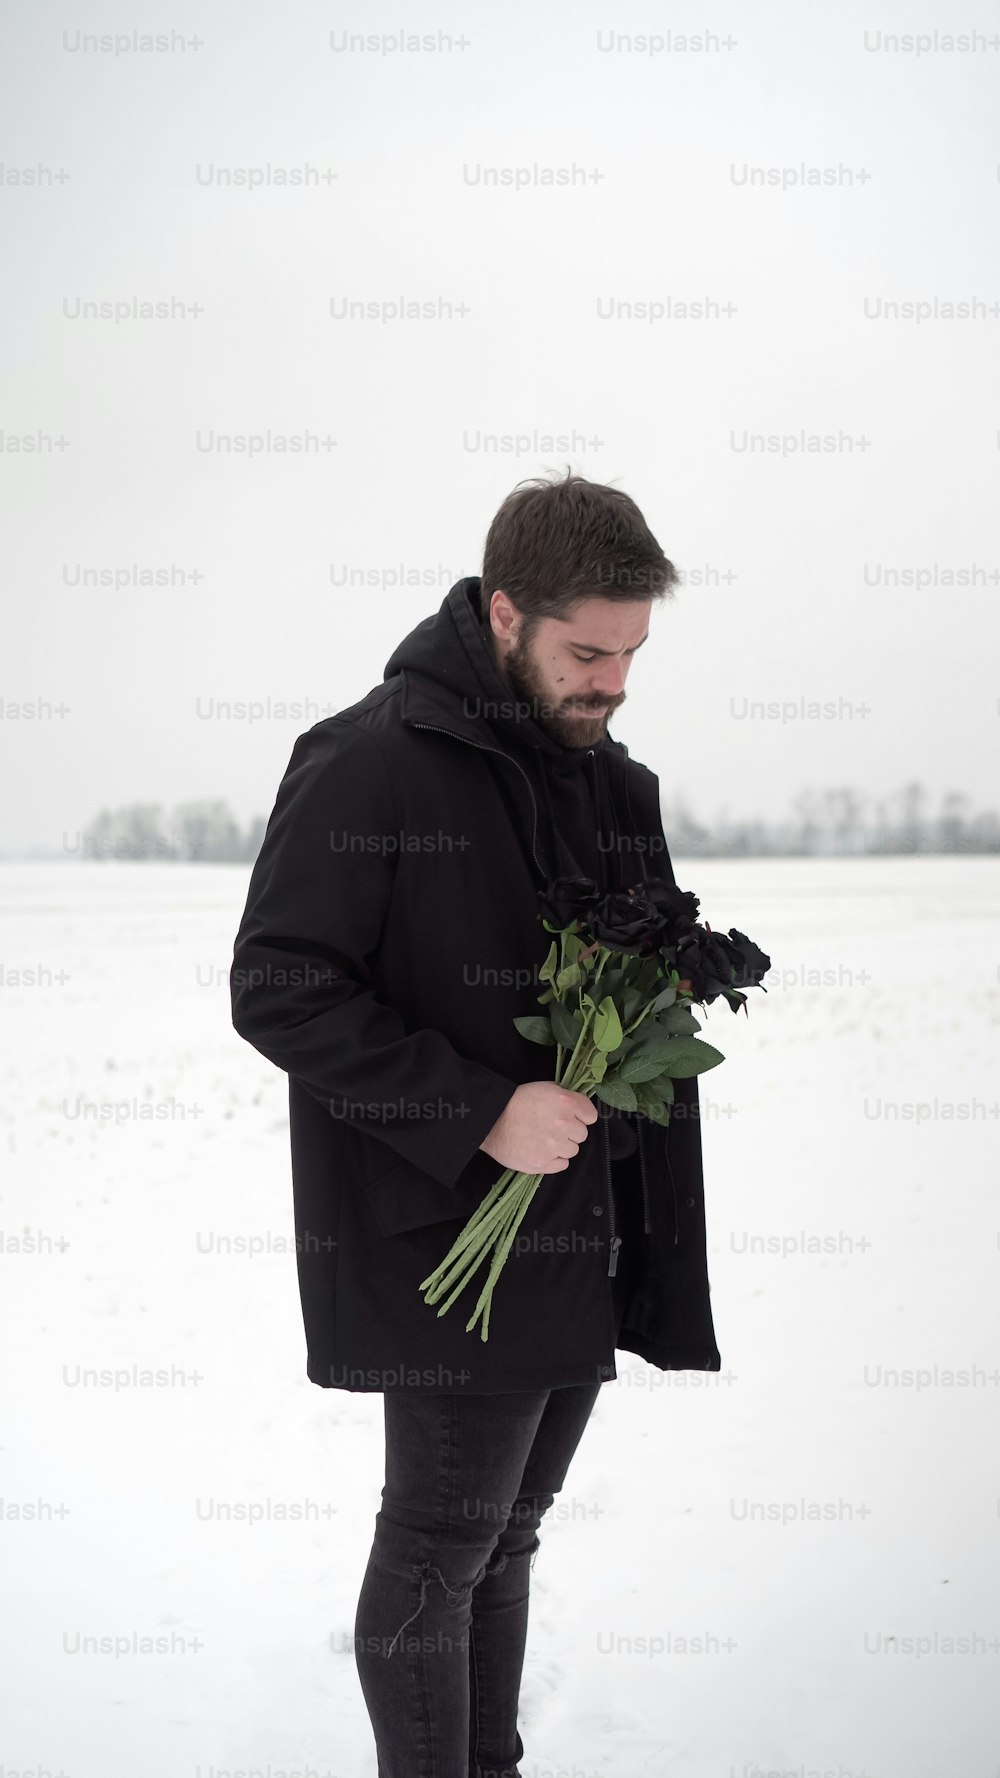 Un hombre parado en la nieve sosteniendo un ramo de flores